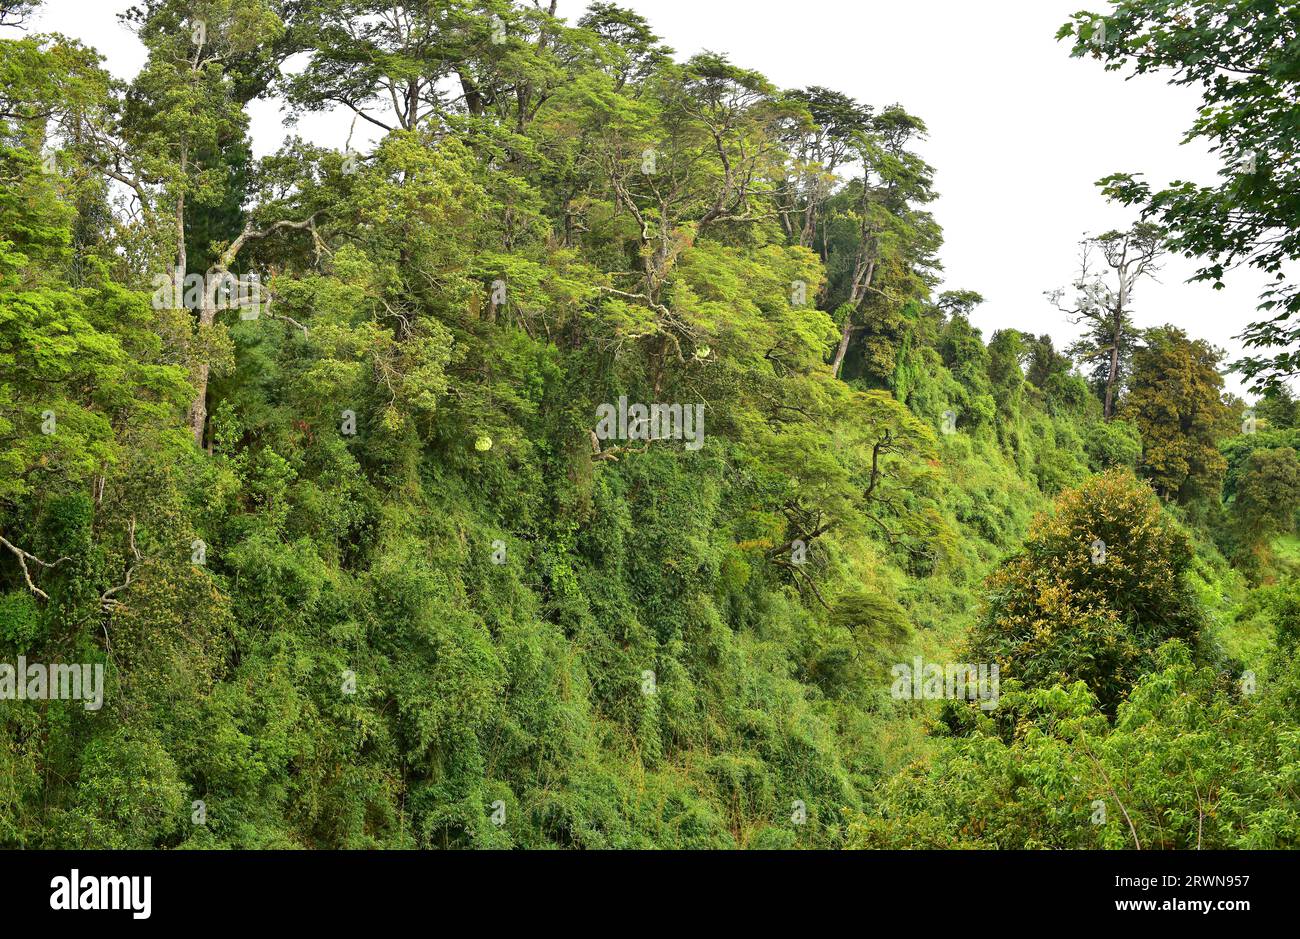 Puerto Varas, Bosque templado Lluvioso (gemäßigter Regenwald) oder Valdivian gemäßigter Wald. Region de Los Lagos, Chile. Stockfoto